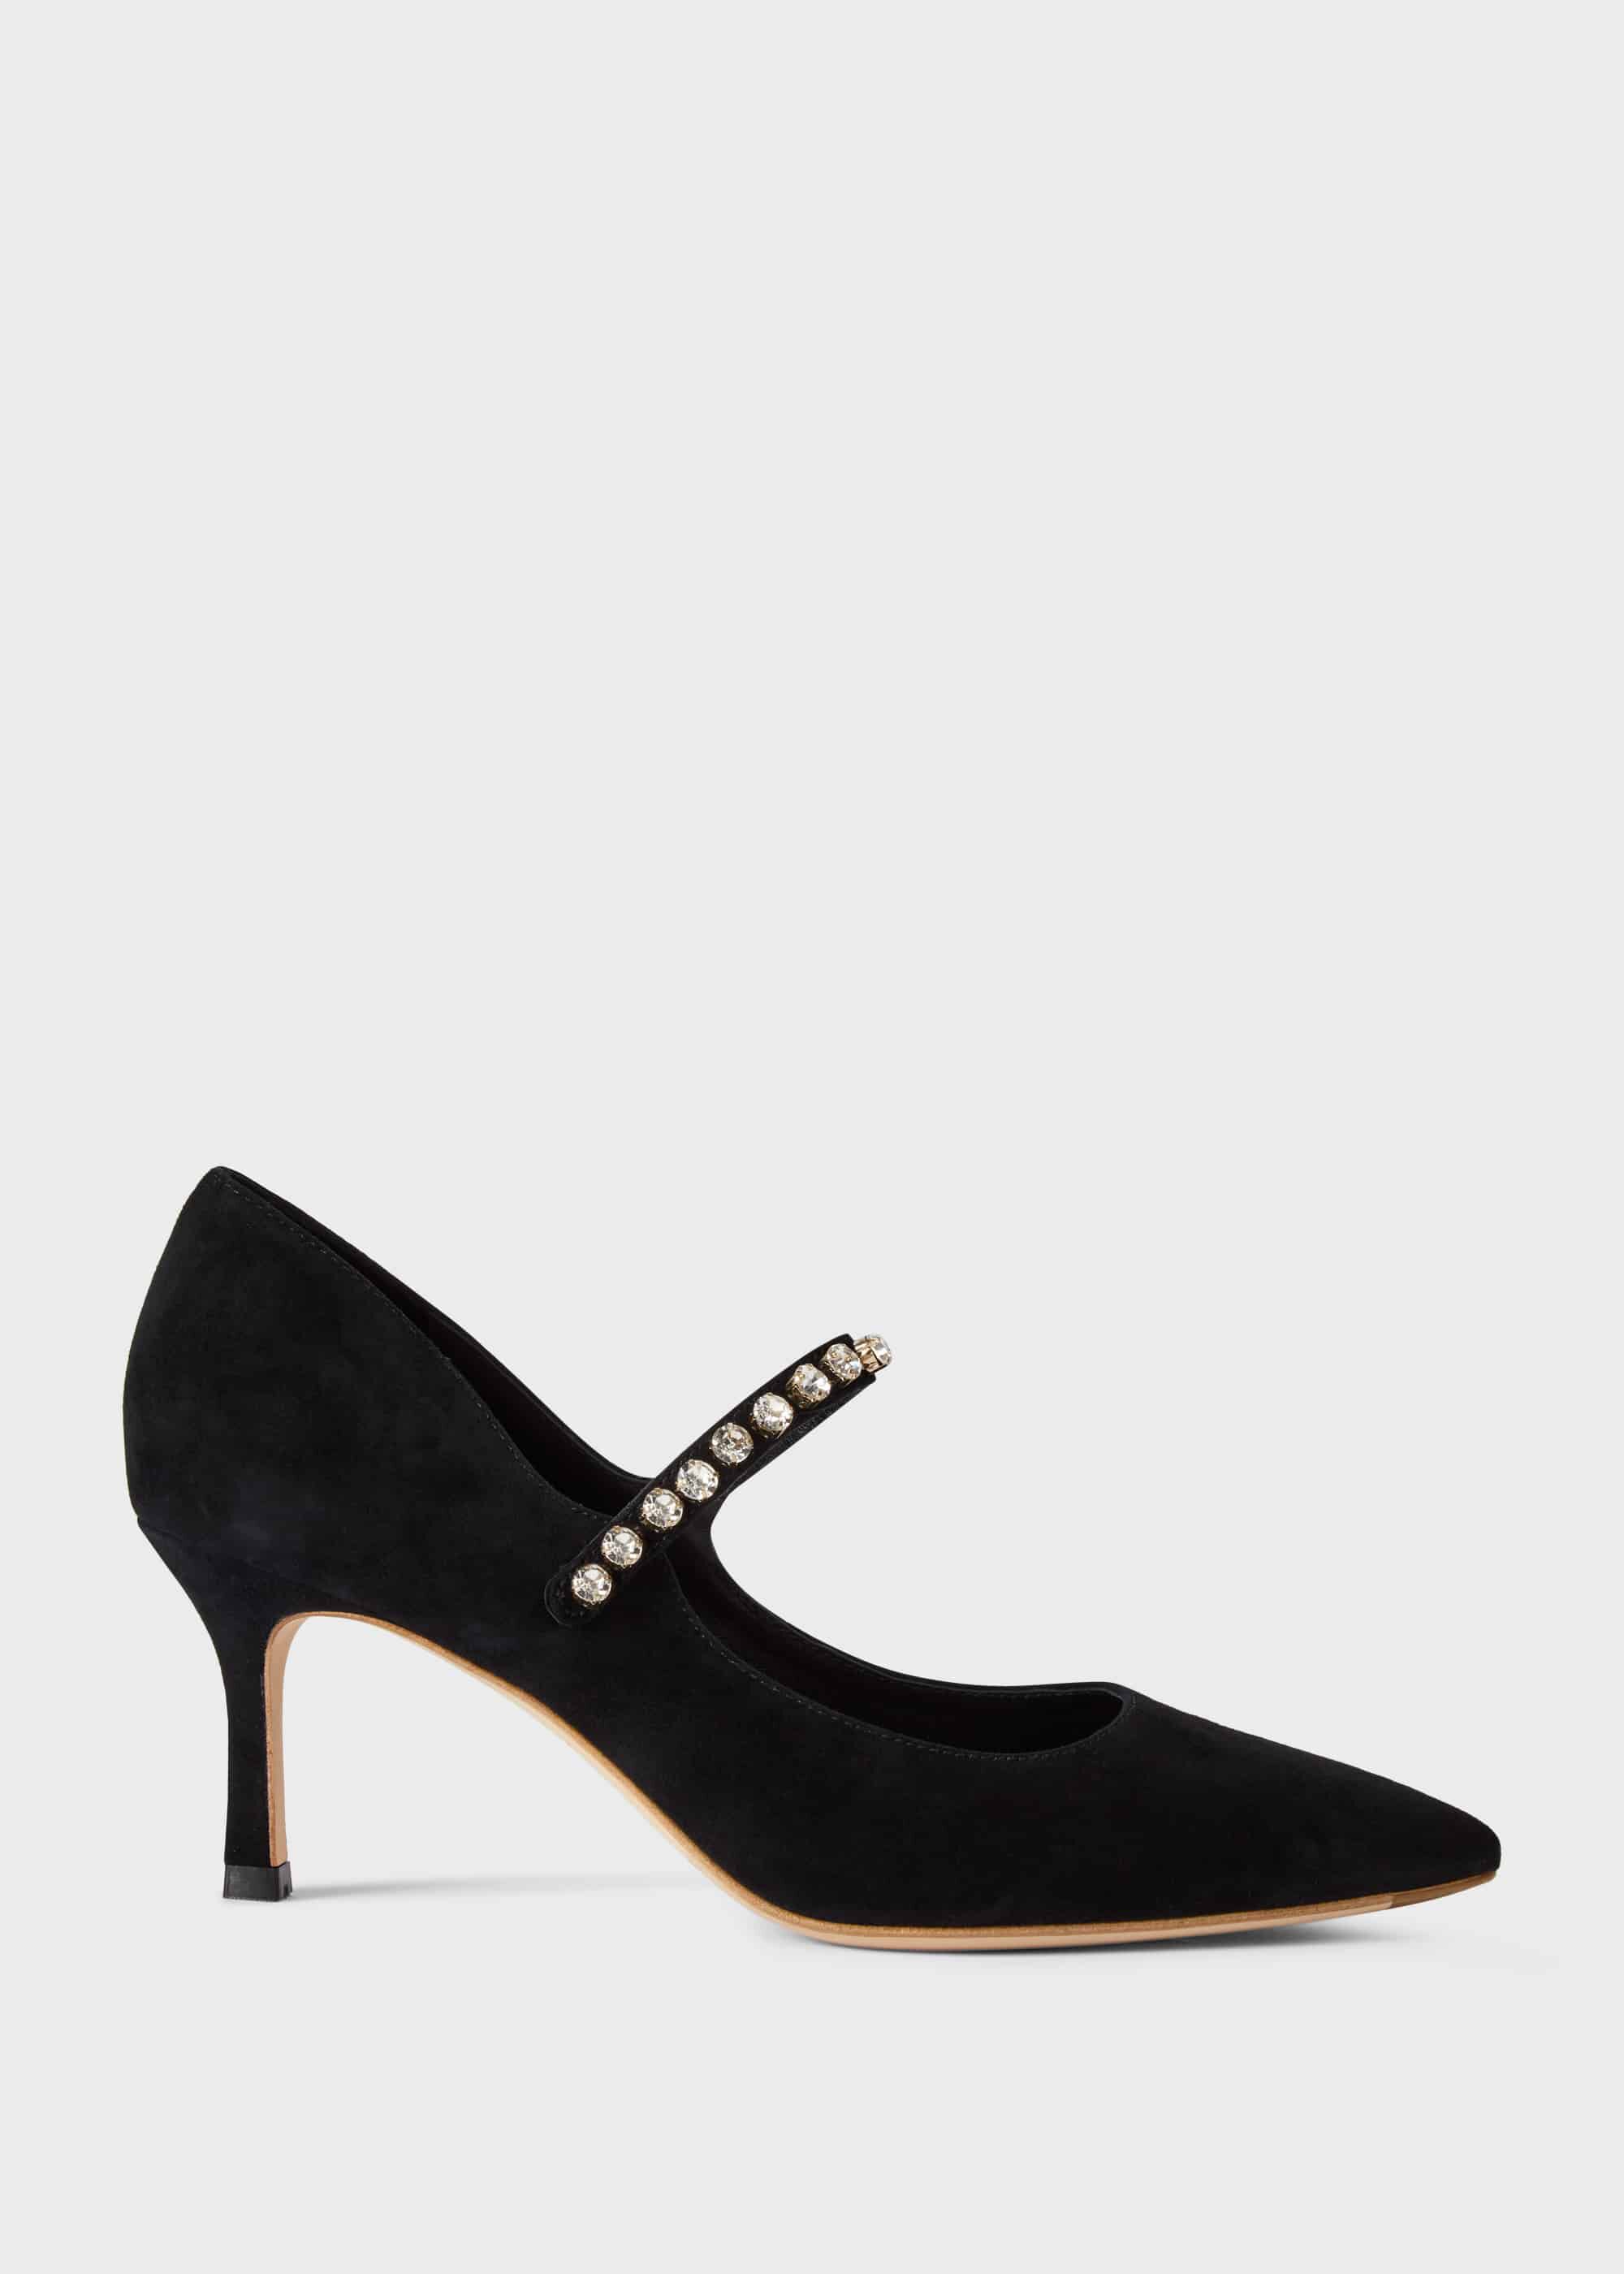 harper black suede ankle strap heels